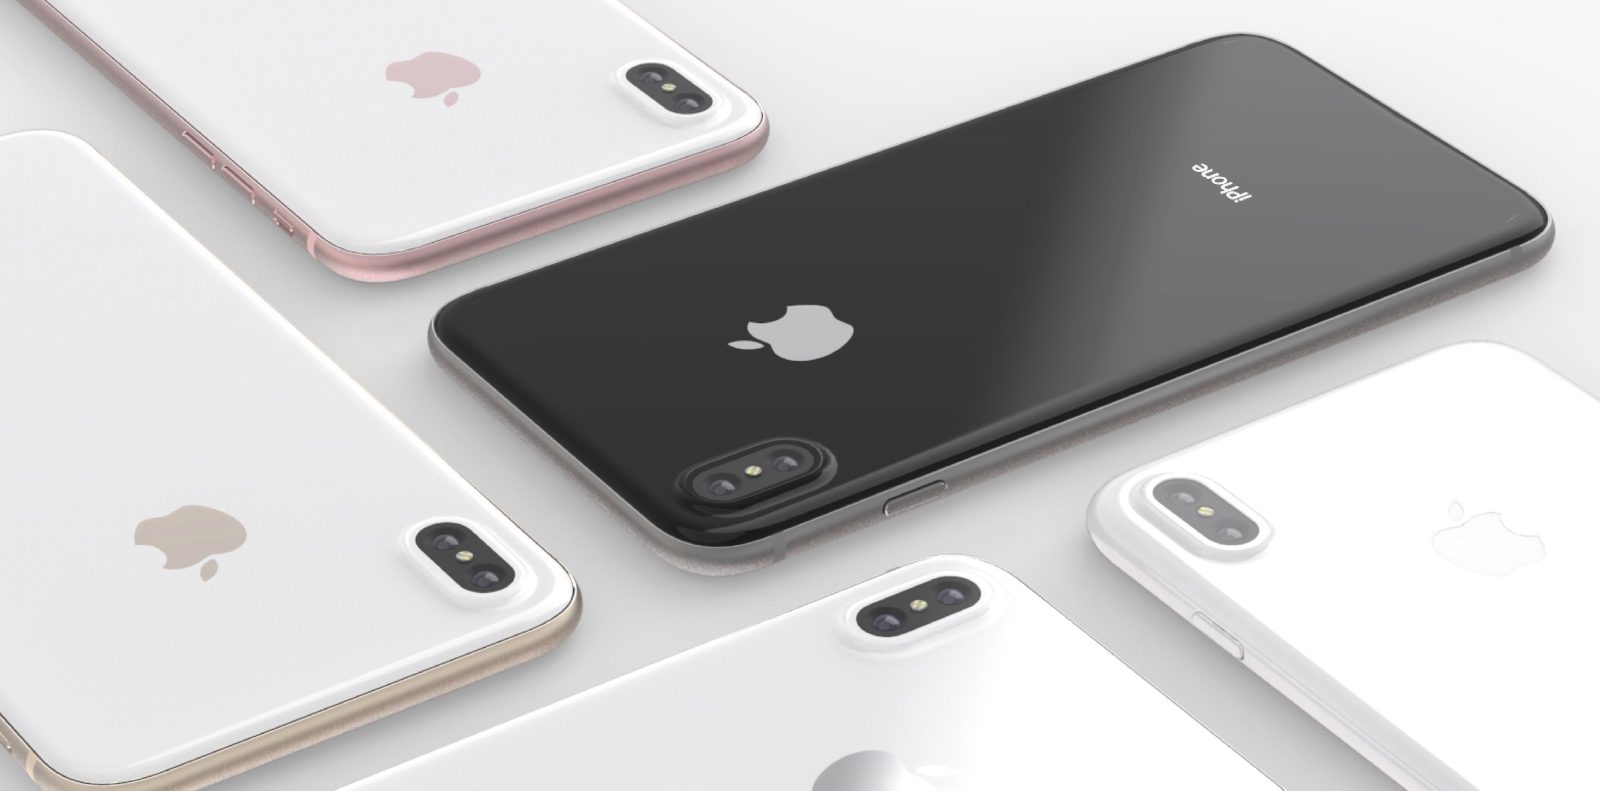 Theo NYT: iPhone 8 sẽ được Apple bán ra với giá “khoảng $999”